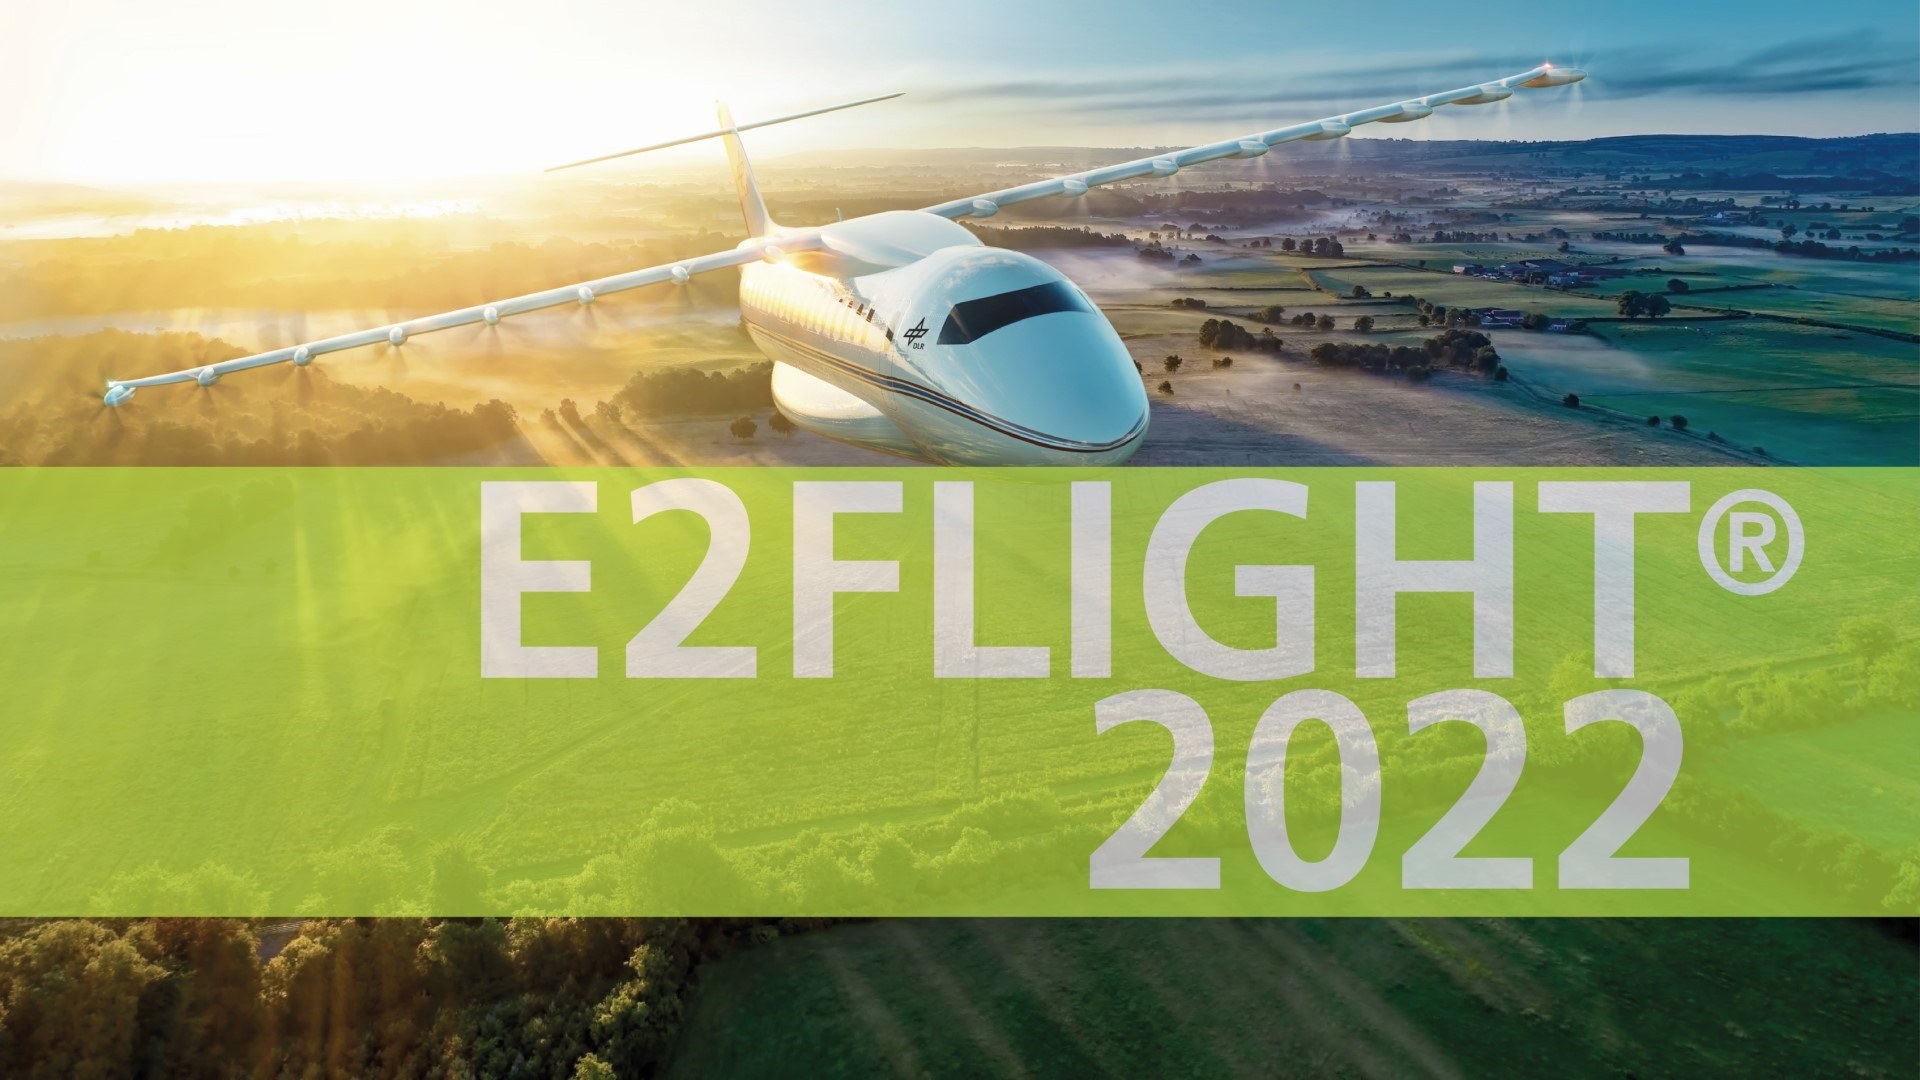 Die E2Flight Conference 2022 findet virtuell statt: Forschung und Industrie berichten über Projekte zum elektrischen und emissionsfreien Fliegen.